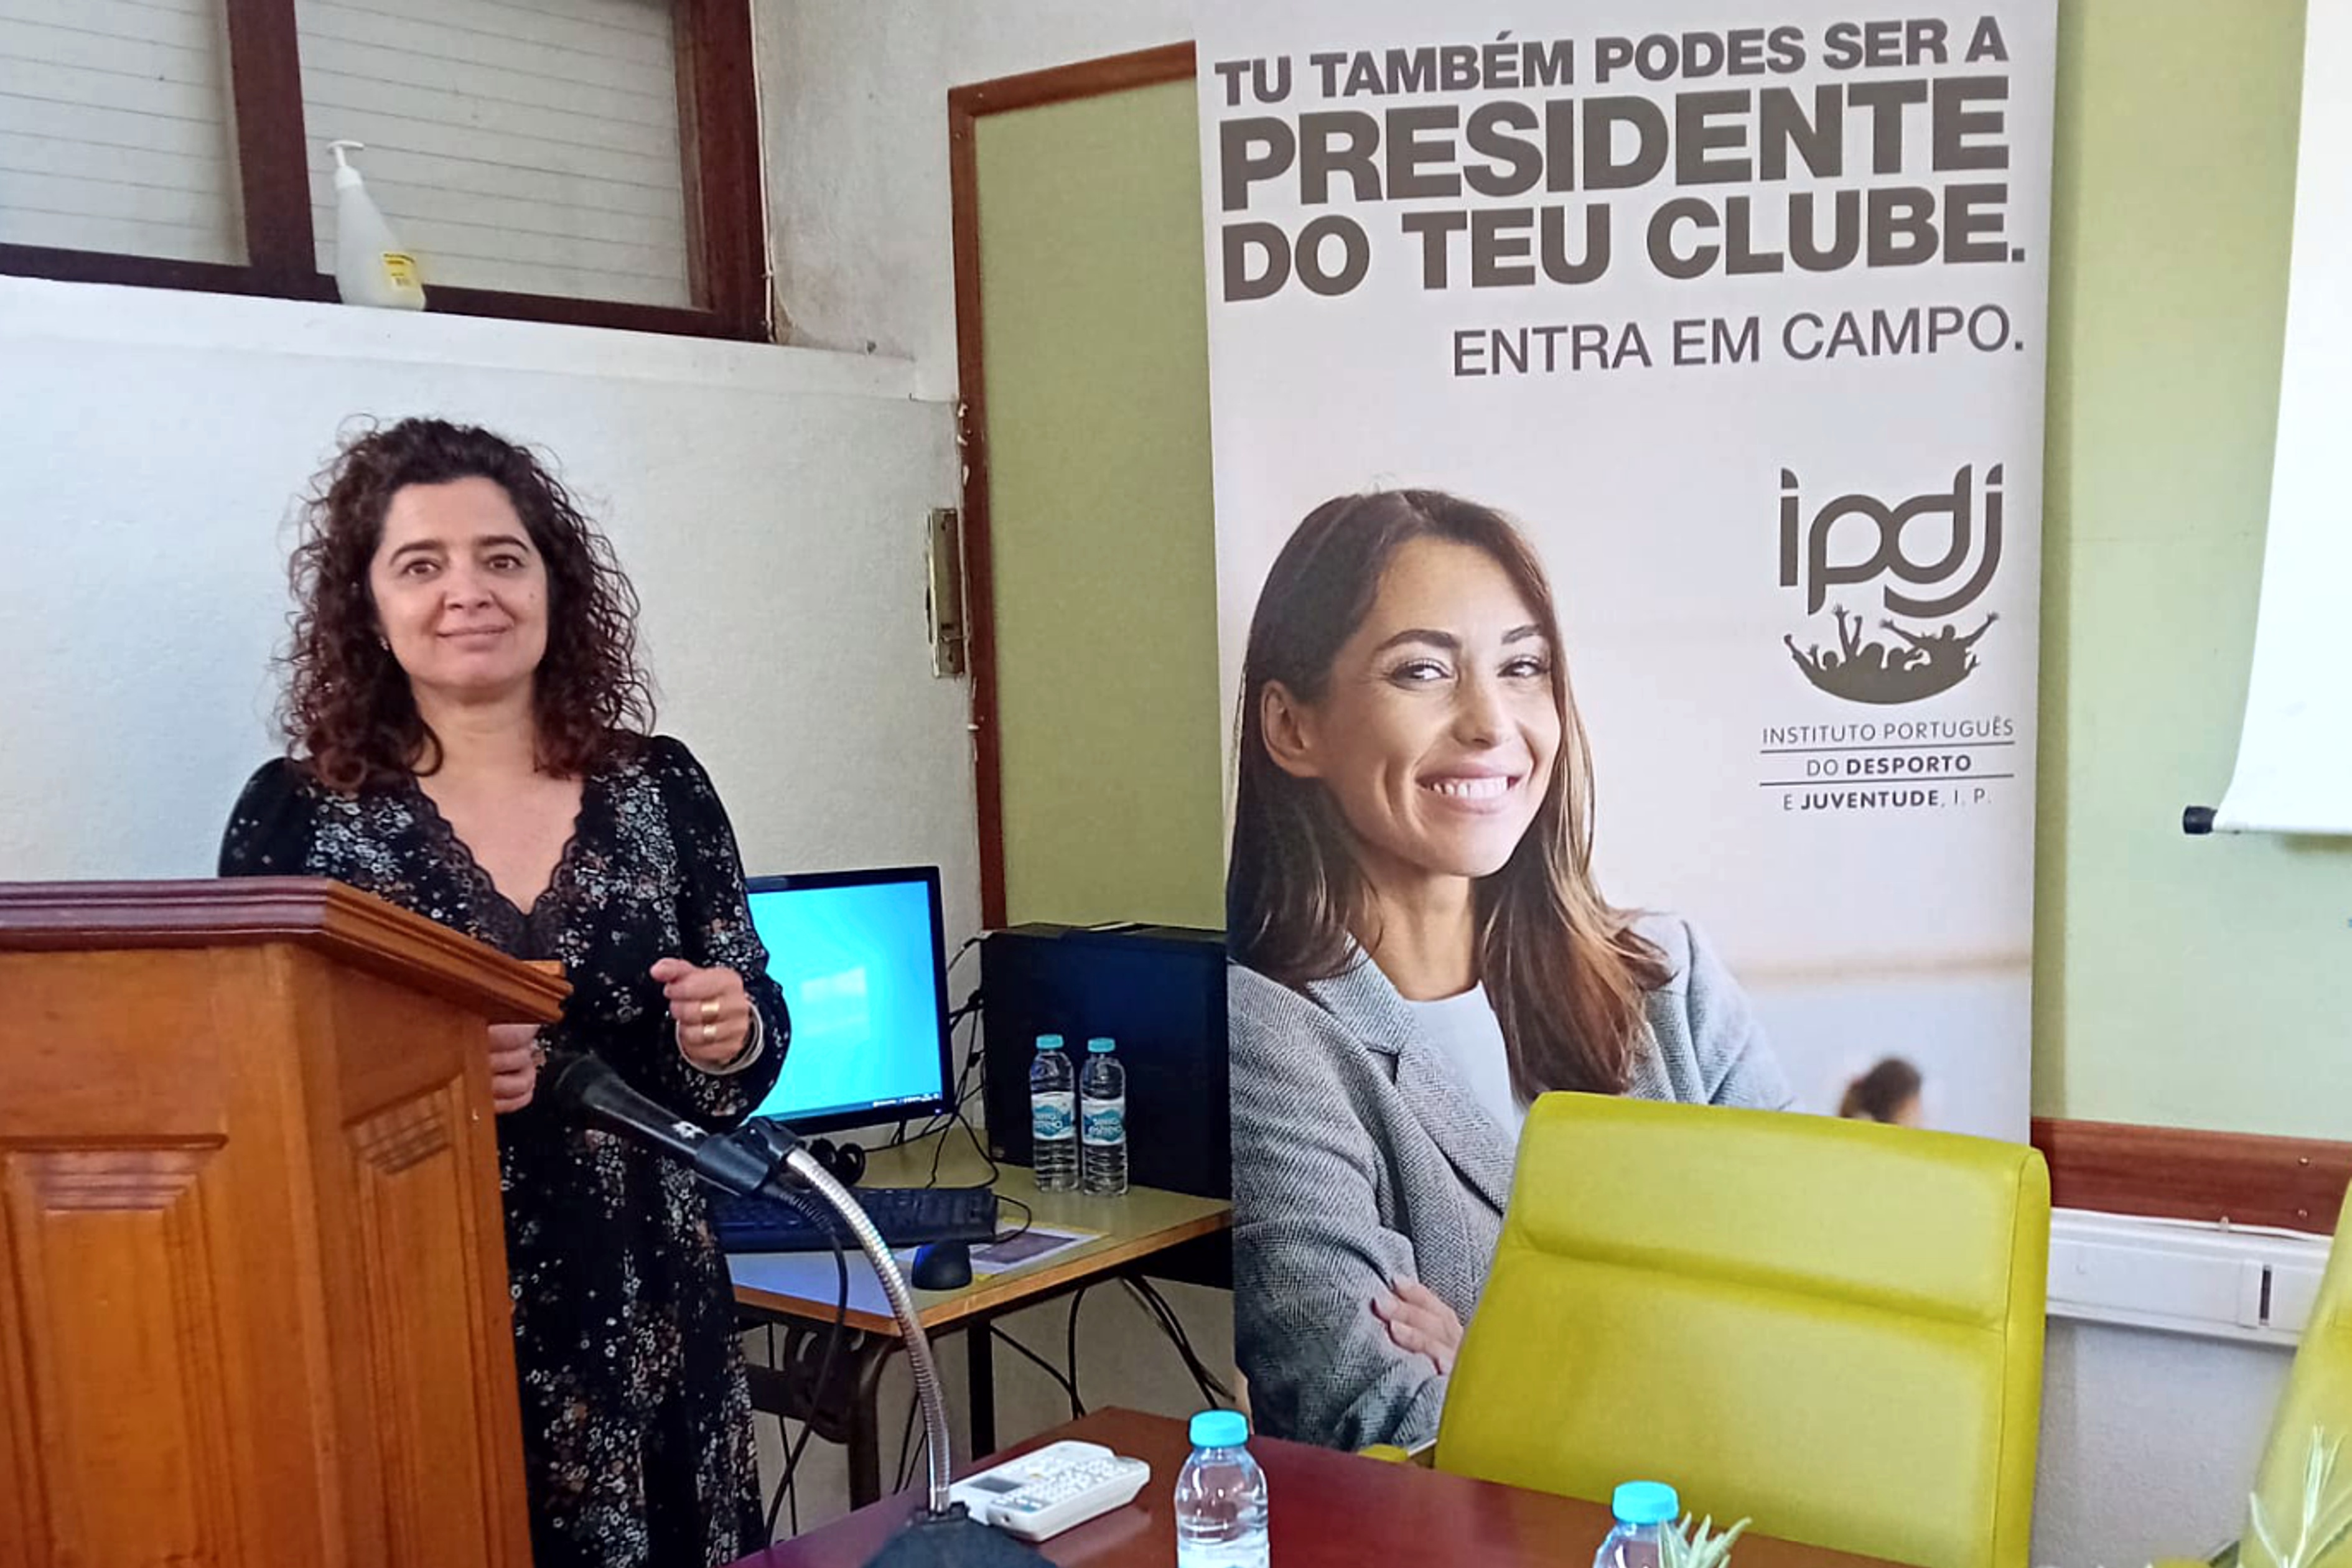 Técnica do IPDJ/Évora, Rita Felício, na sessão da campanha «tu também podes ser a presidente do teu clube», tendo como imagem de fundo o Rol-Up desta campanha.